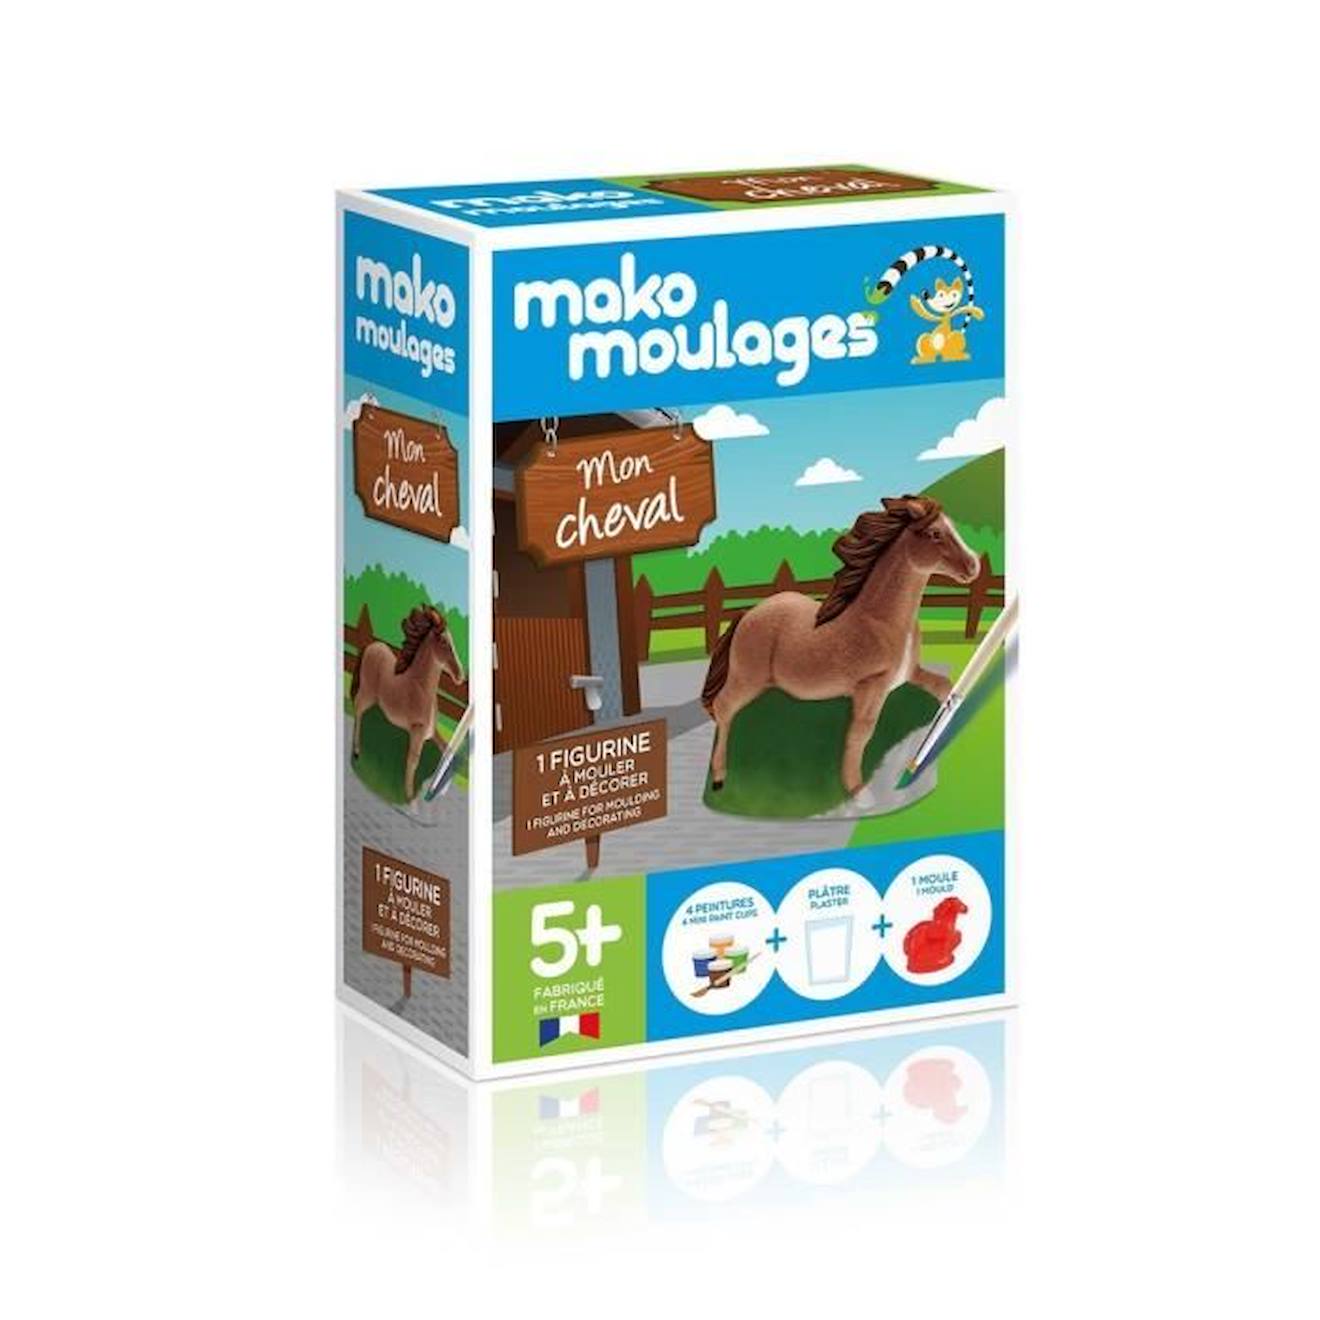 Mako Moulage - Astérix Collector